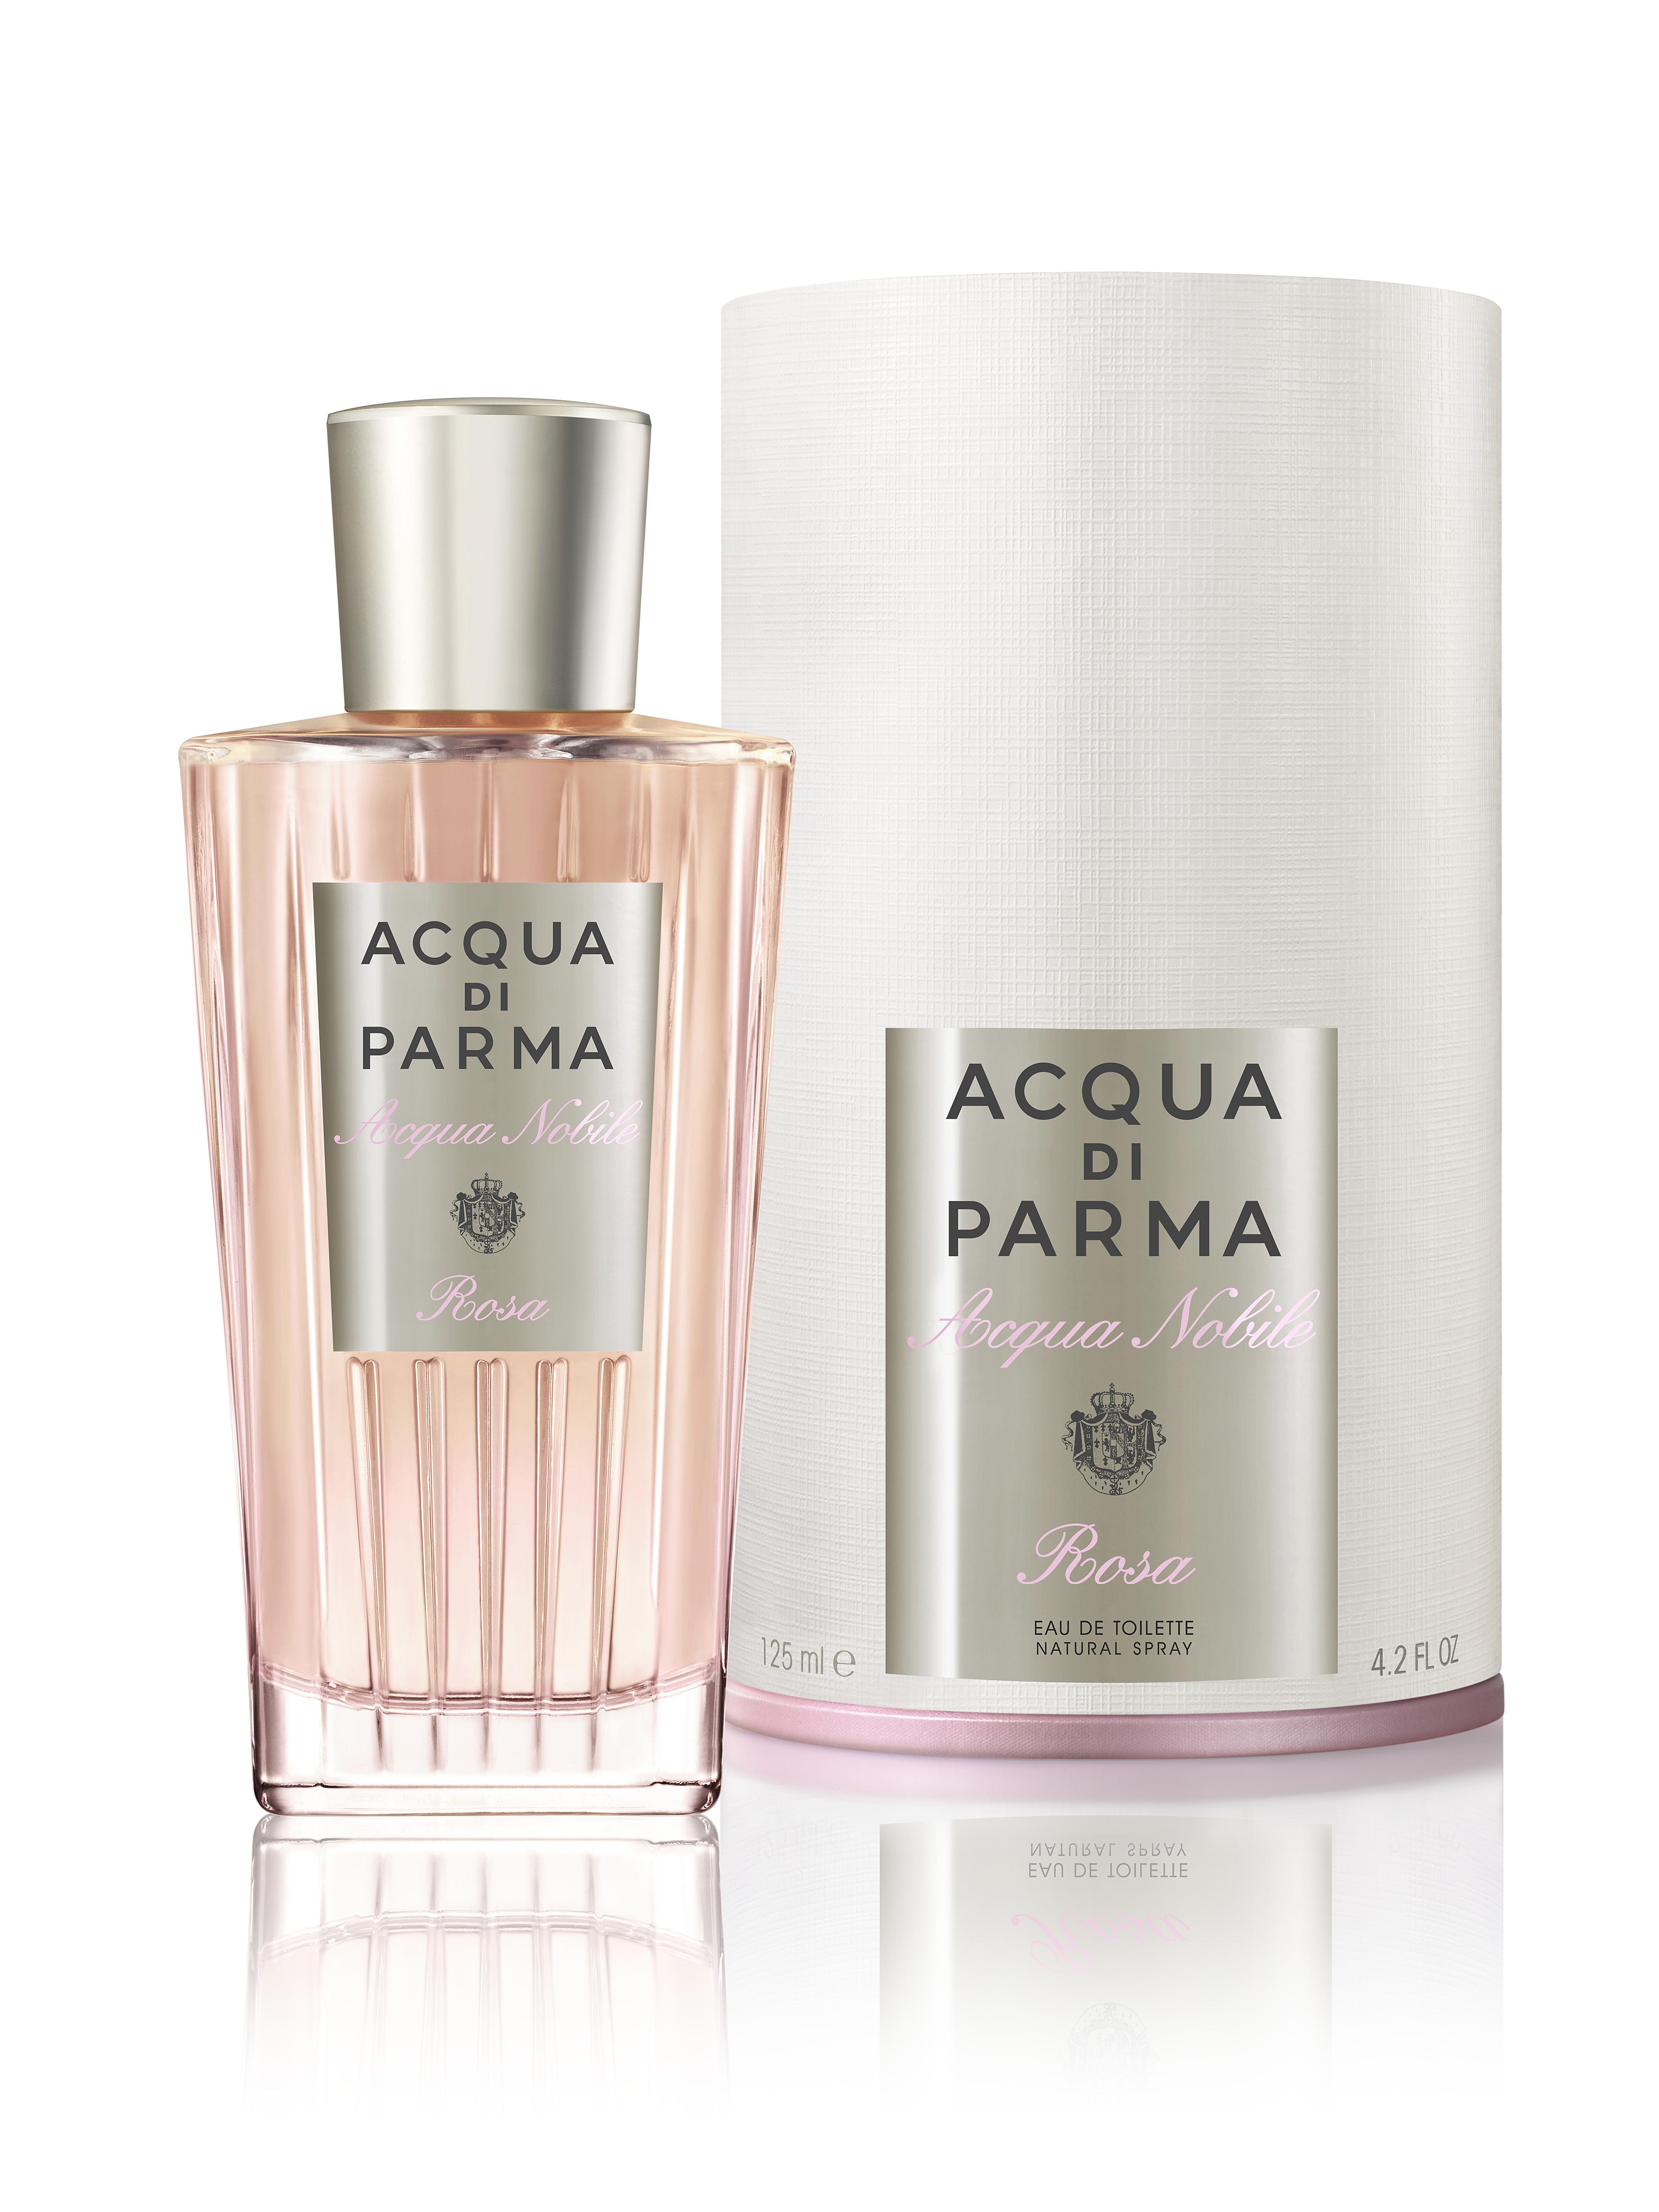 La fragranza dedicata alla rosa della collezione 'Acqua Nobile' di Acqua di Parma 